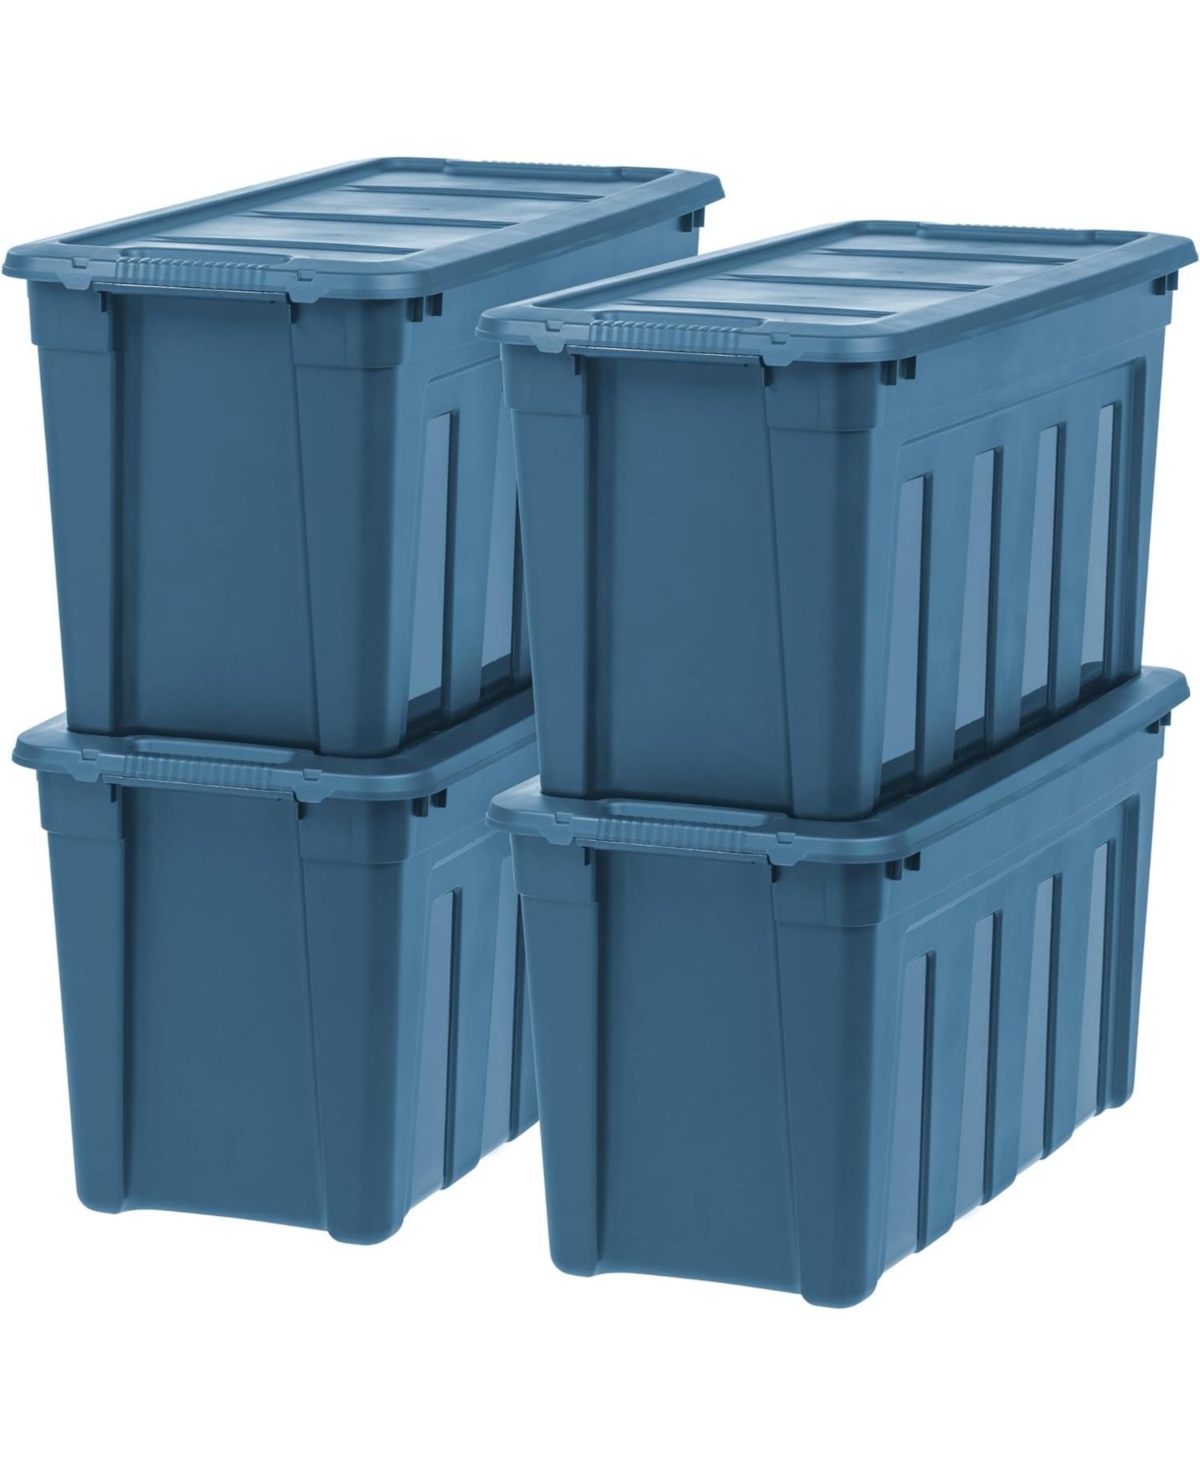 31 Gallon Heavy-Duty Storage Plastic Bin Tote Container, Black, Set of 4 - Blue